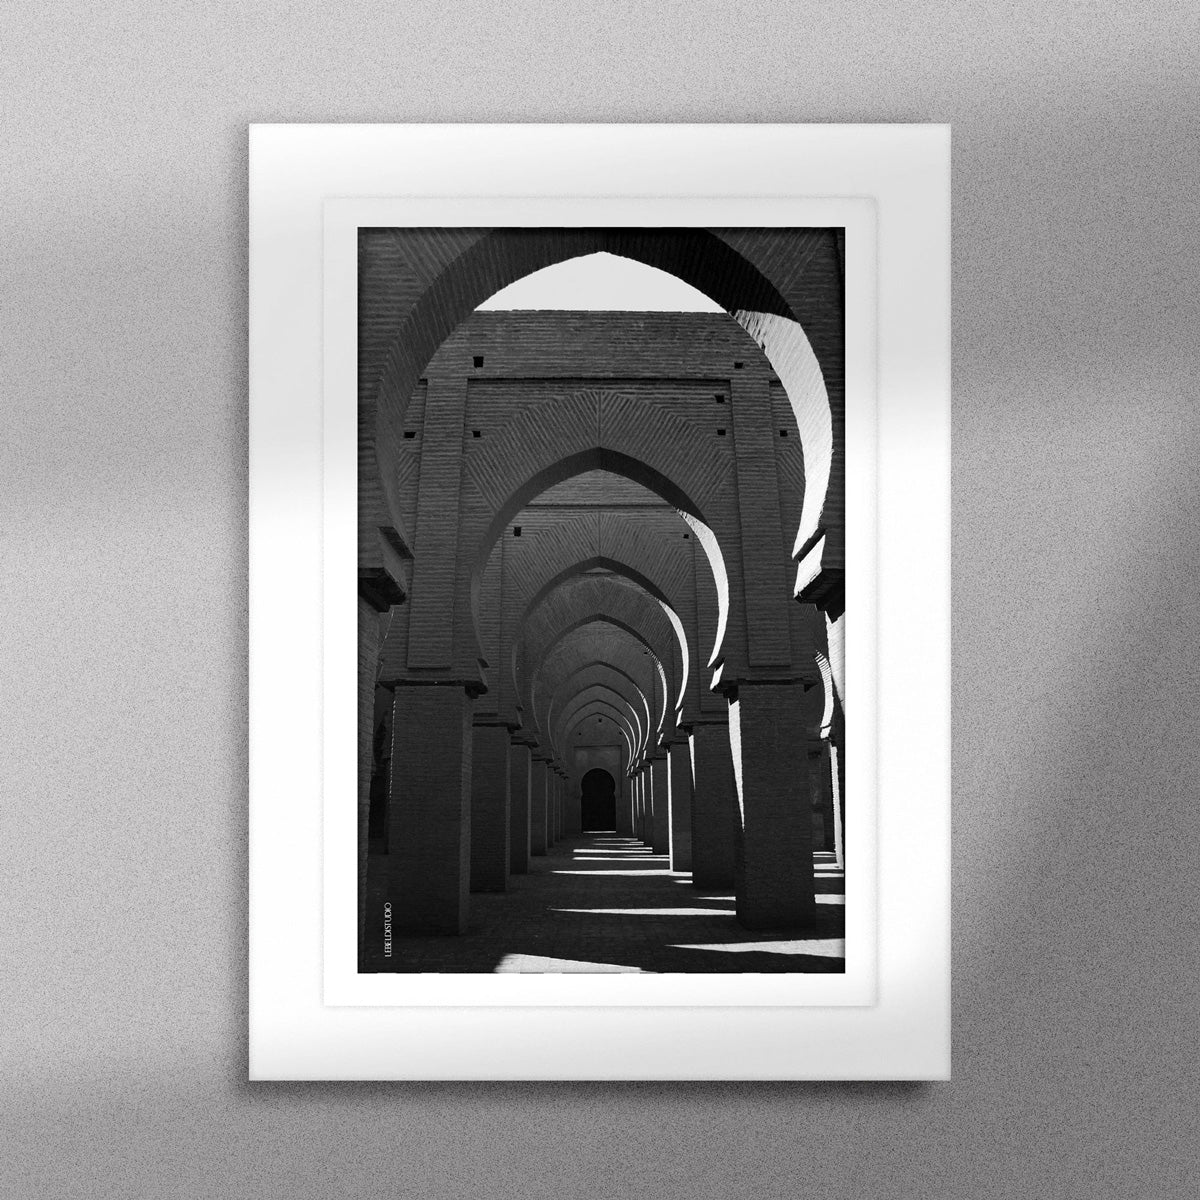 Tableau décoratif en noir et blanc de la Mosquée Tinmel, encadré dans un cadre blanc - Format A5.